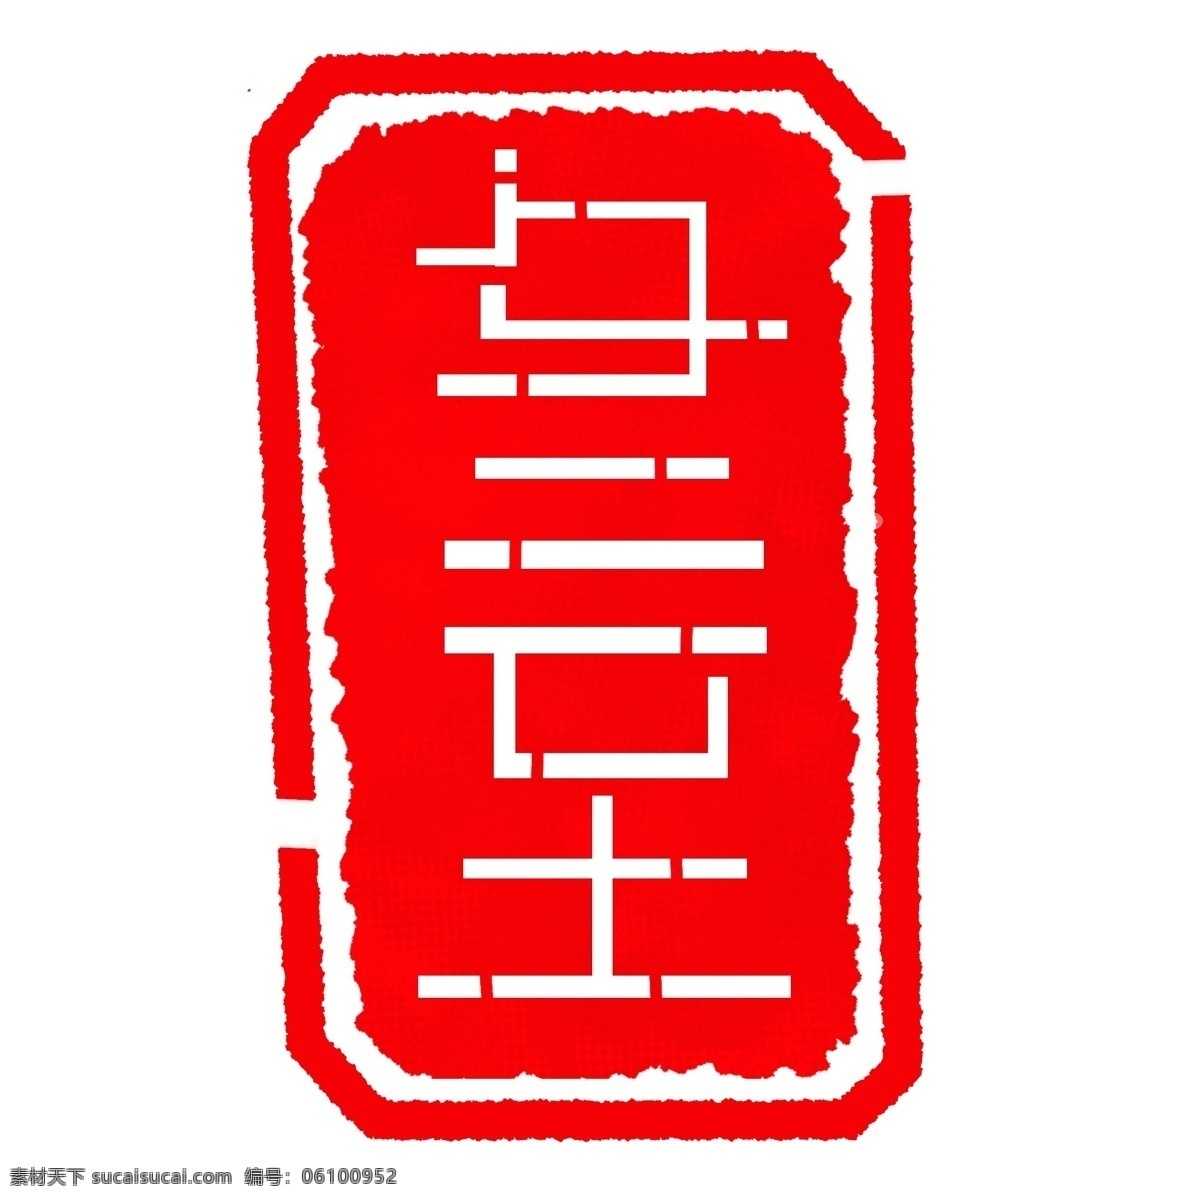 冬至 立体 字 印章 插画 二十四节气 白色字体 红色印章 立体字印章 冬至印章 印章插图 中国 风